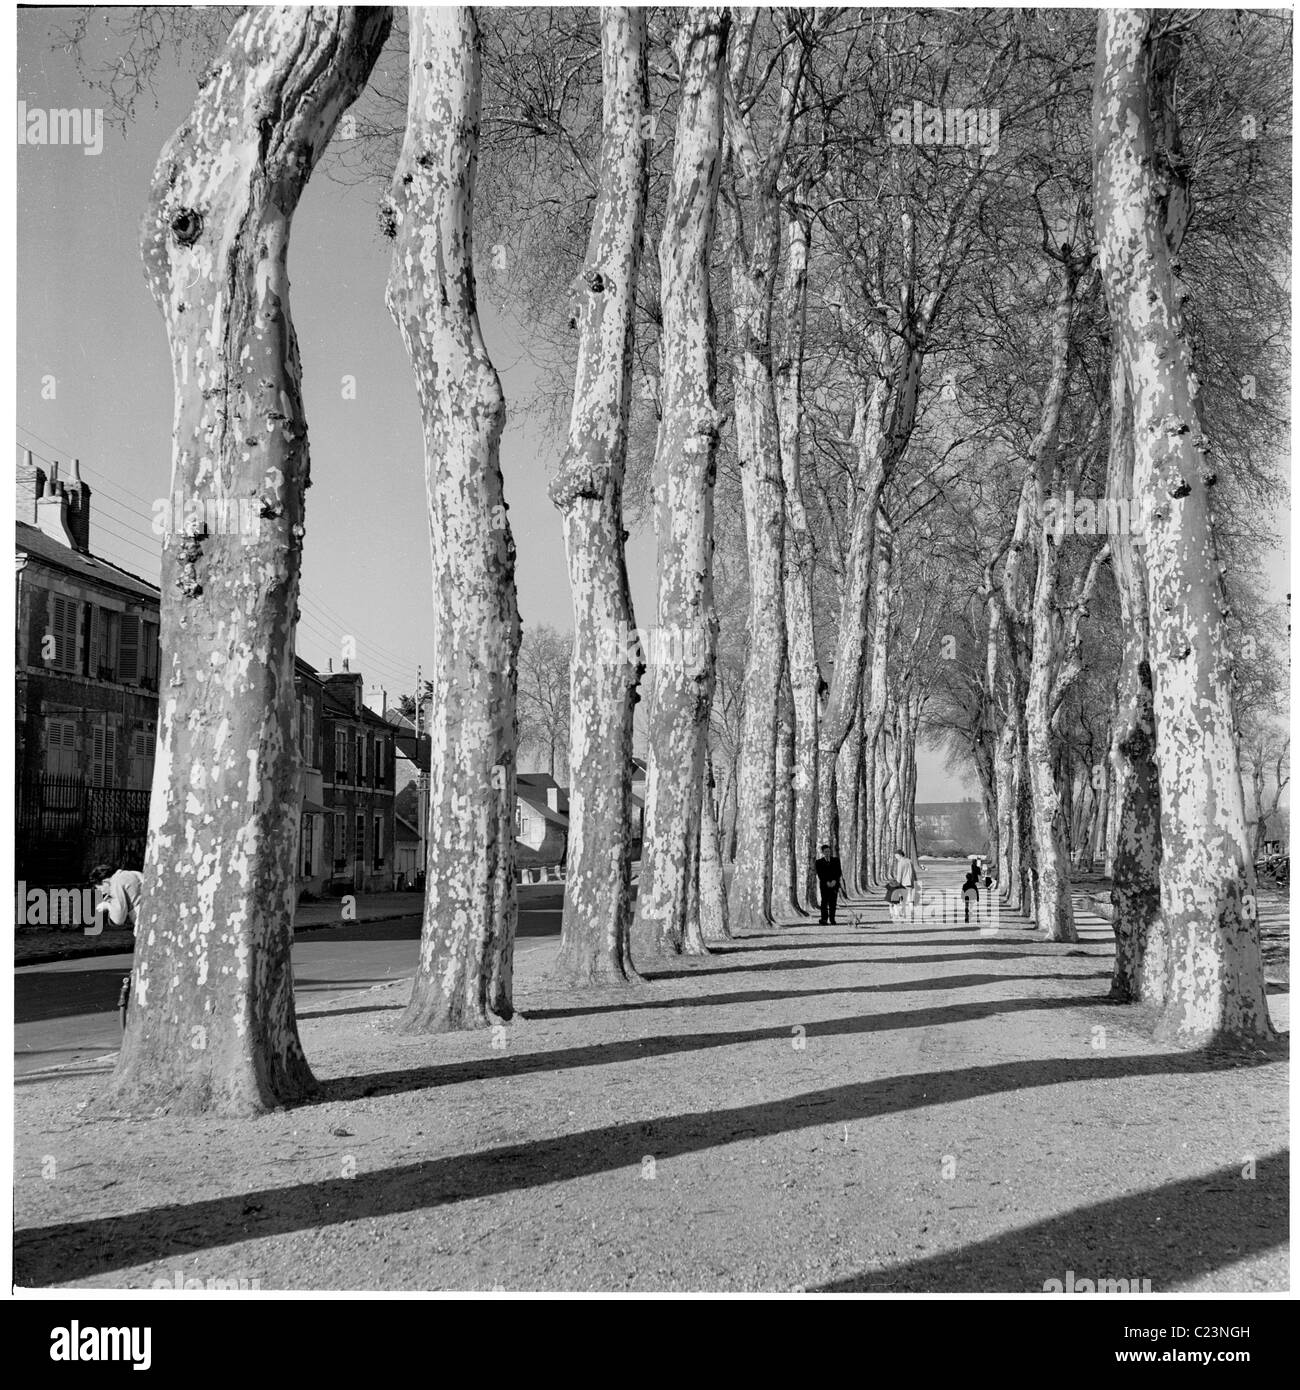 1950er Jahren Frankreich. Hohe Bäume säumen einen Kiesweg an Beauchancey, Frankreich in diesem historischen Bild von J Allan Cash. Stockfoto